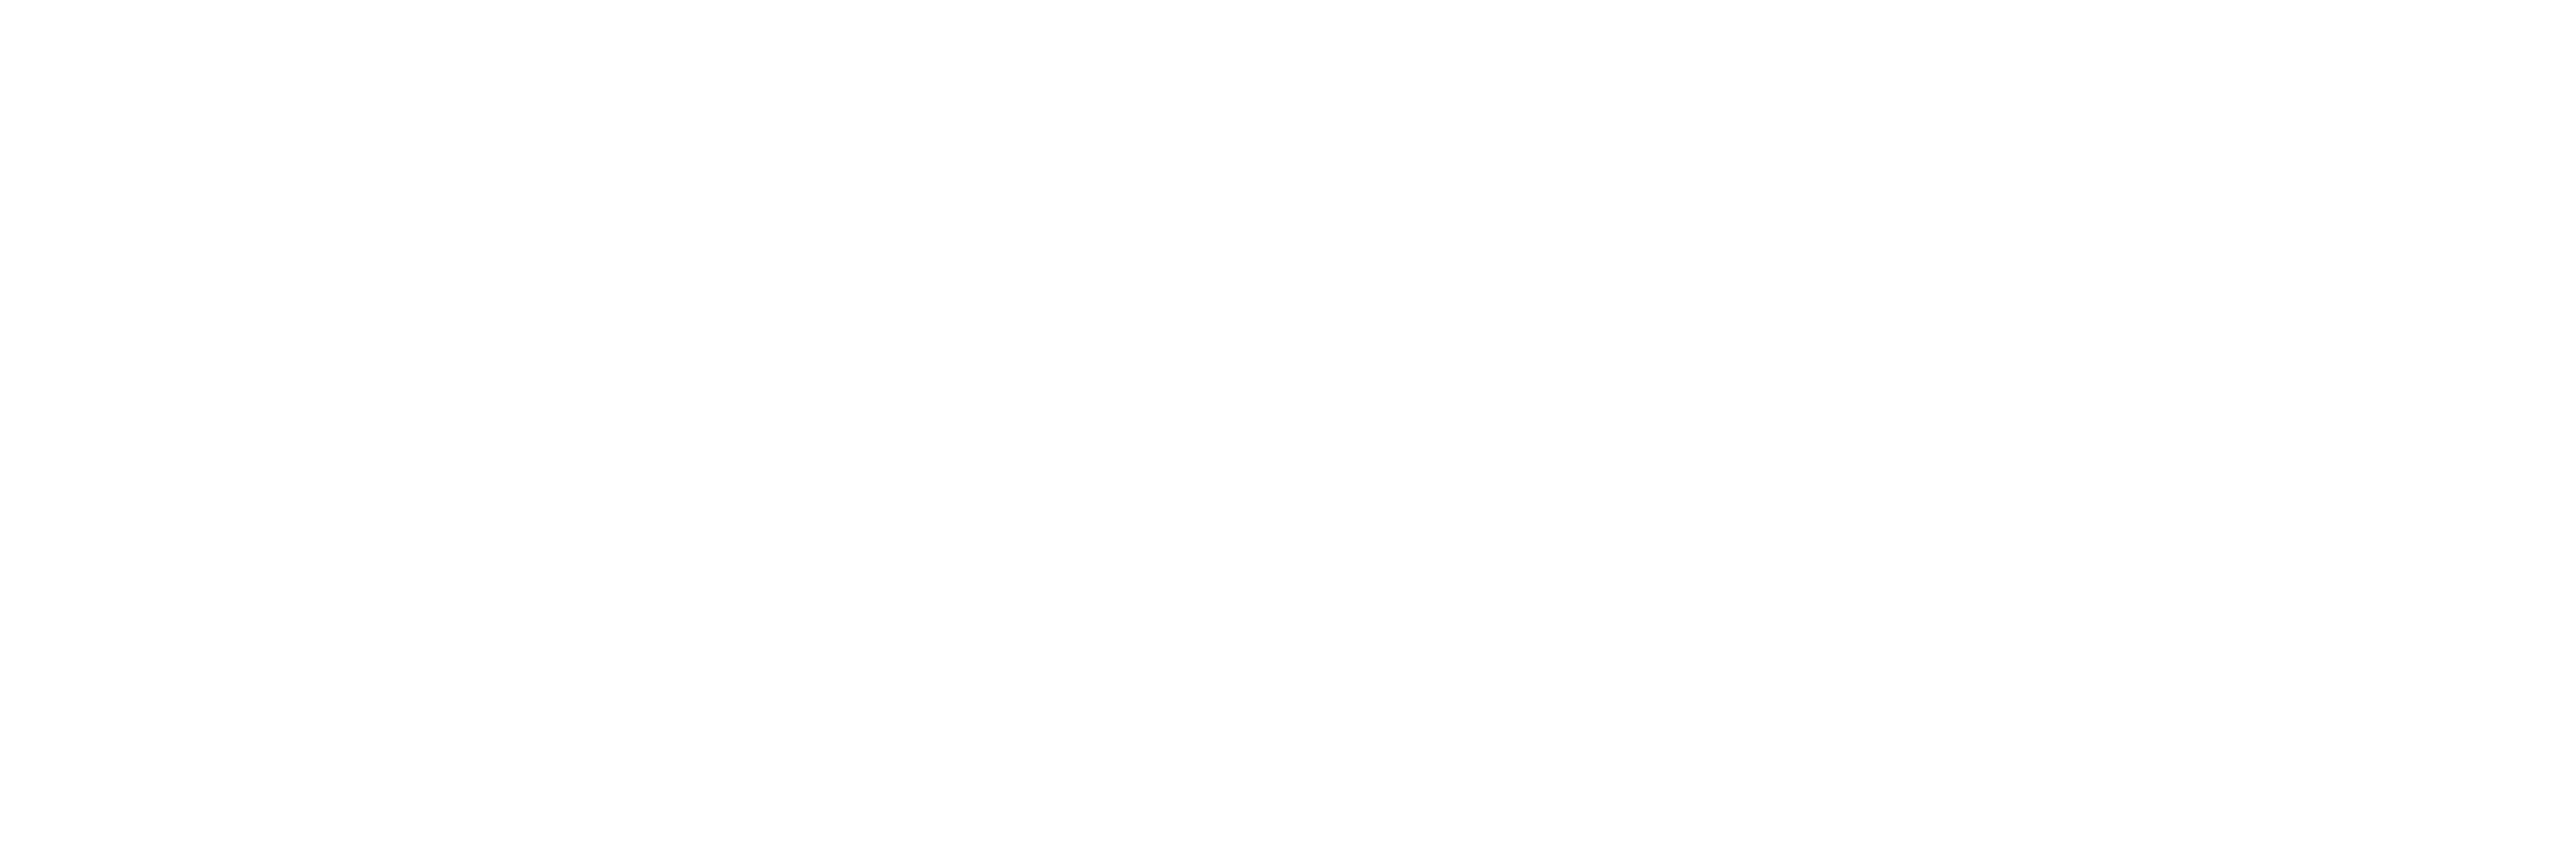 FixMyPEV